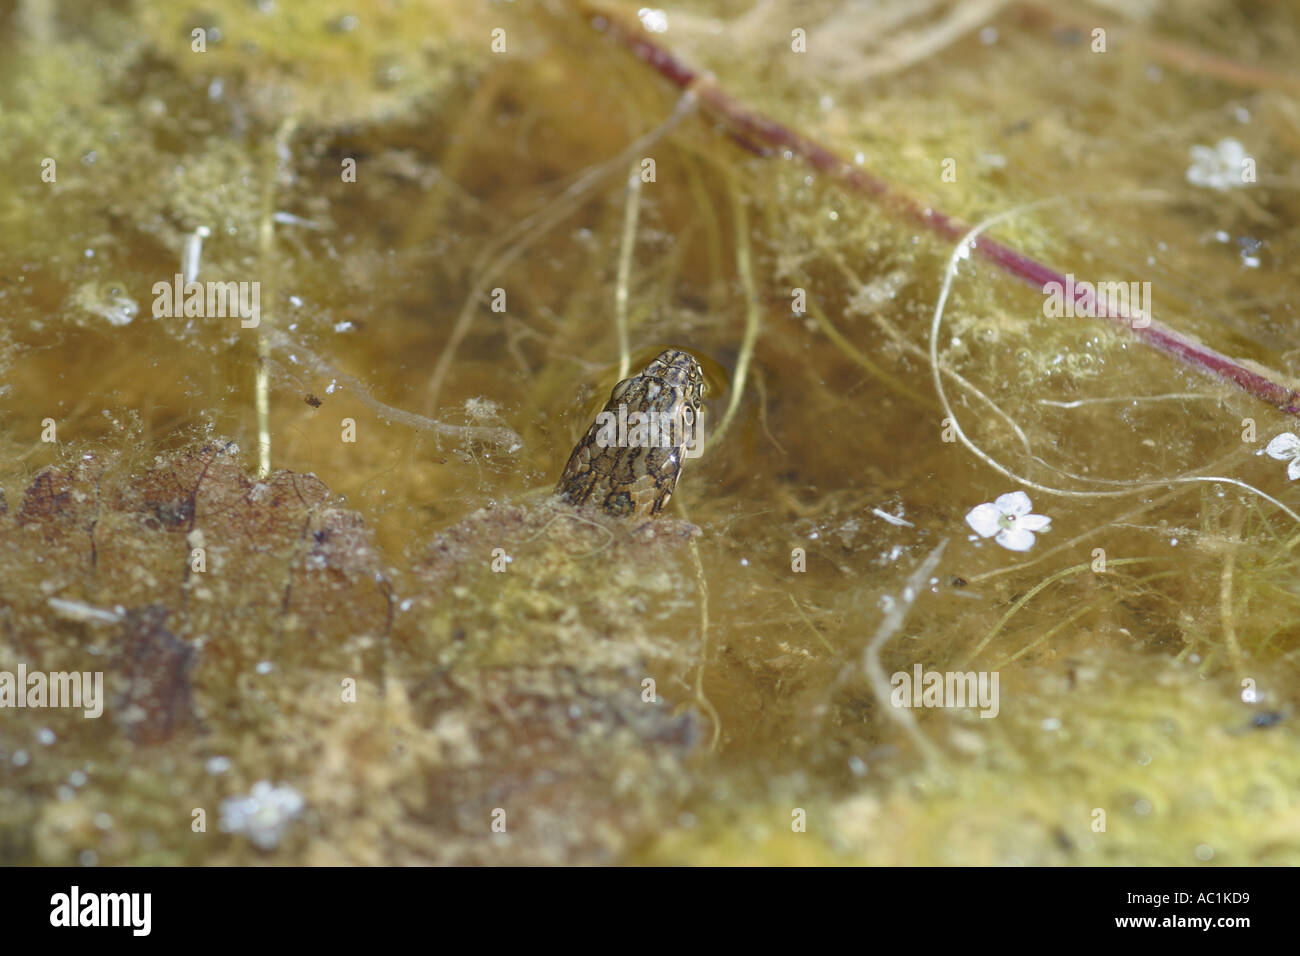 La couleuvre VIPERINE Natrix maura camouflés dans l'EAU À BORD DE RIVIÈRE Banque D'Images